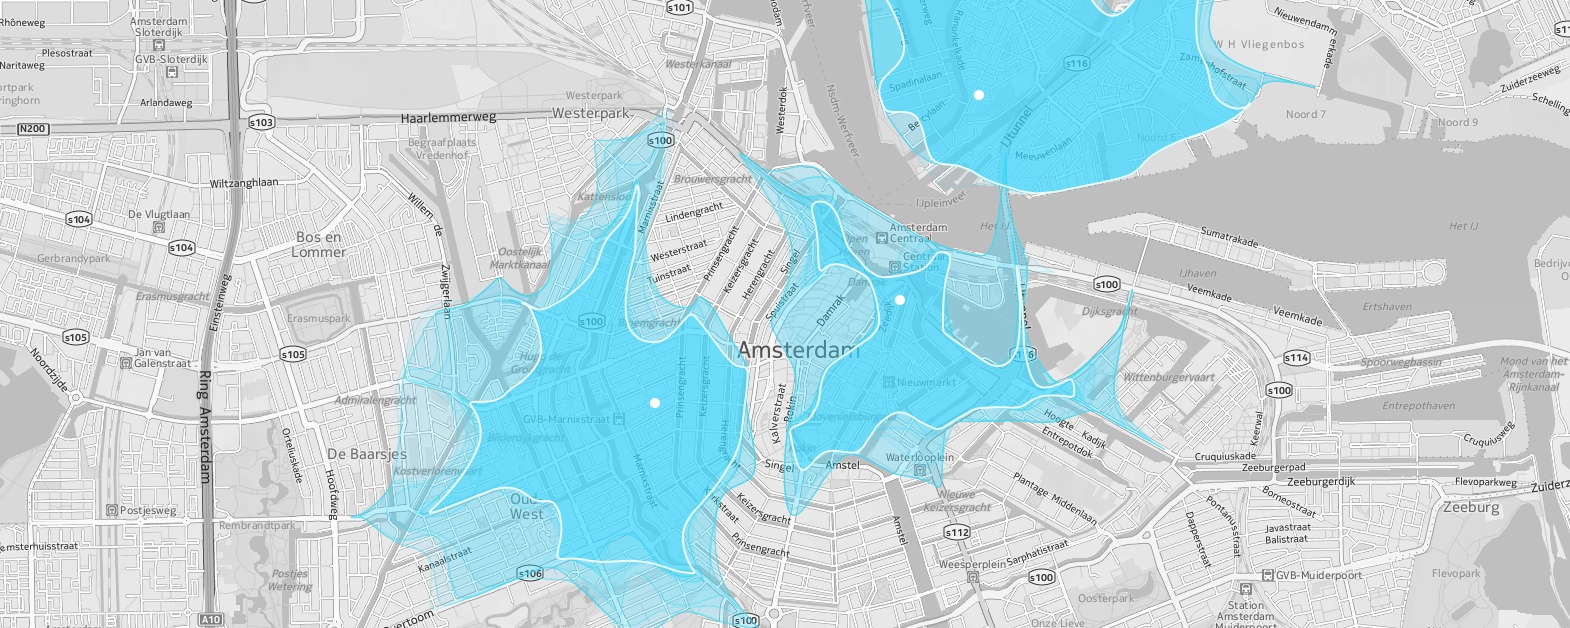 Carte interactive : la mobilité urbaine visualisée